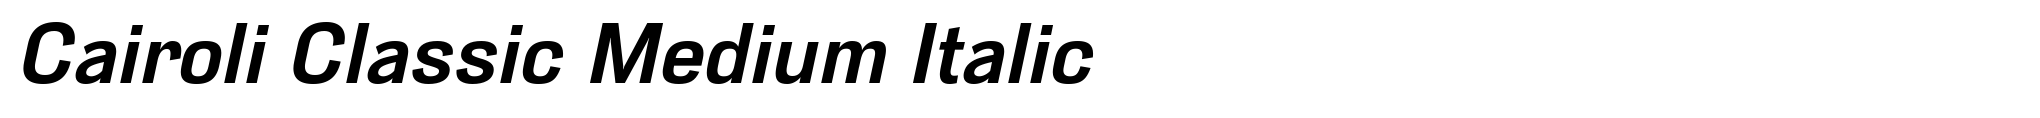 Cairoli Classic Medium Italic image